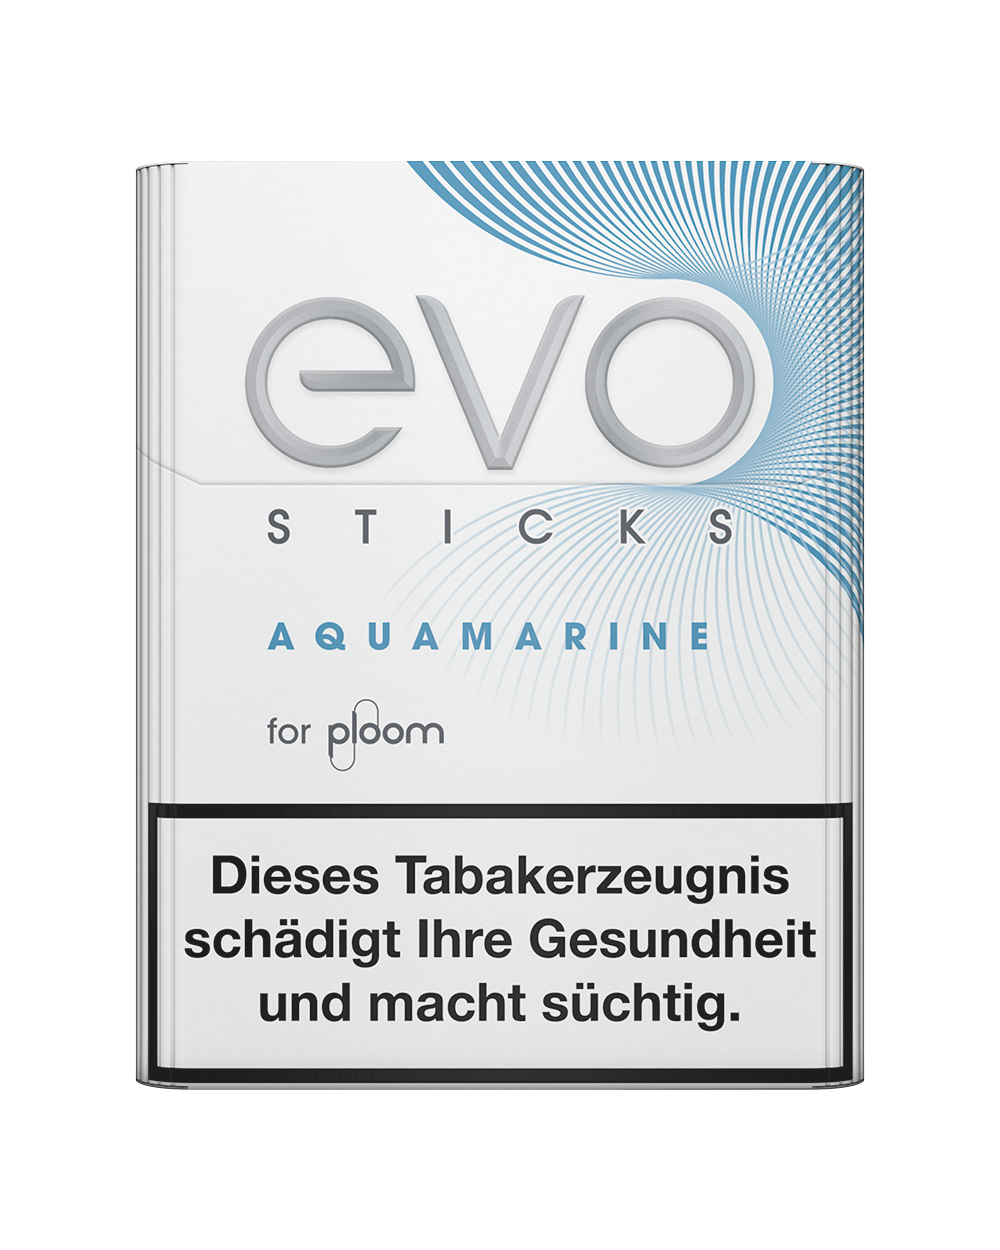  Evo Sticks Aquamarine Schachtel 1 x 20 Stück  